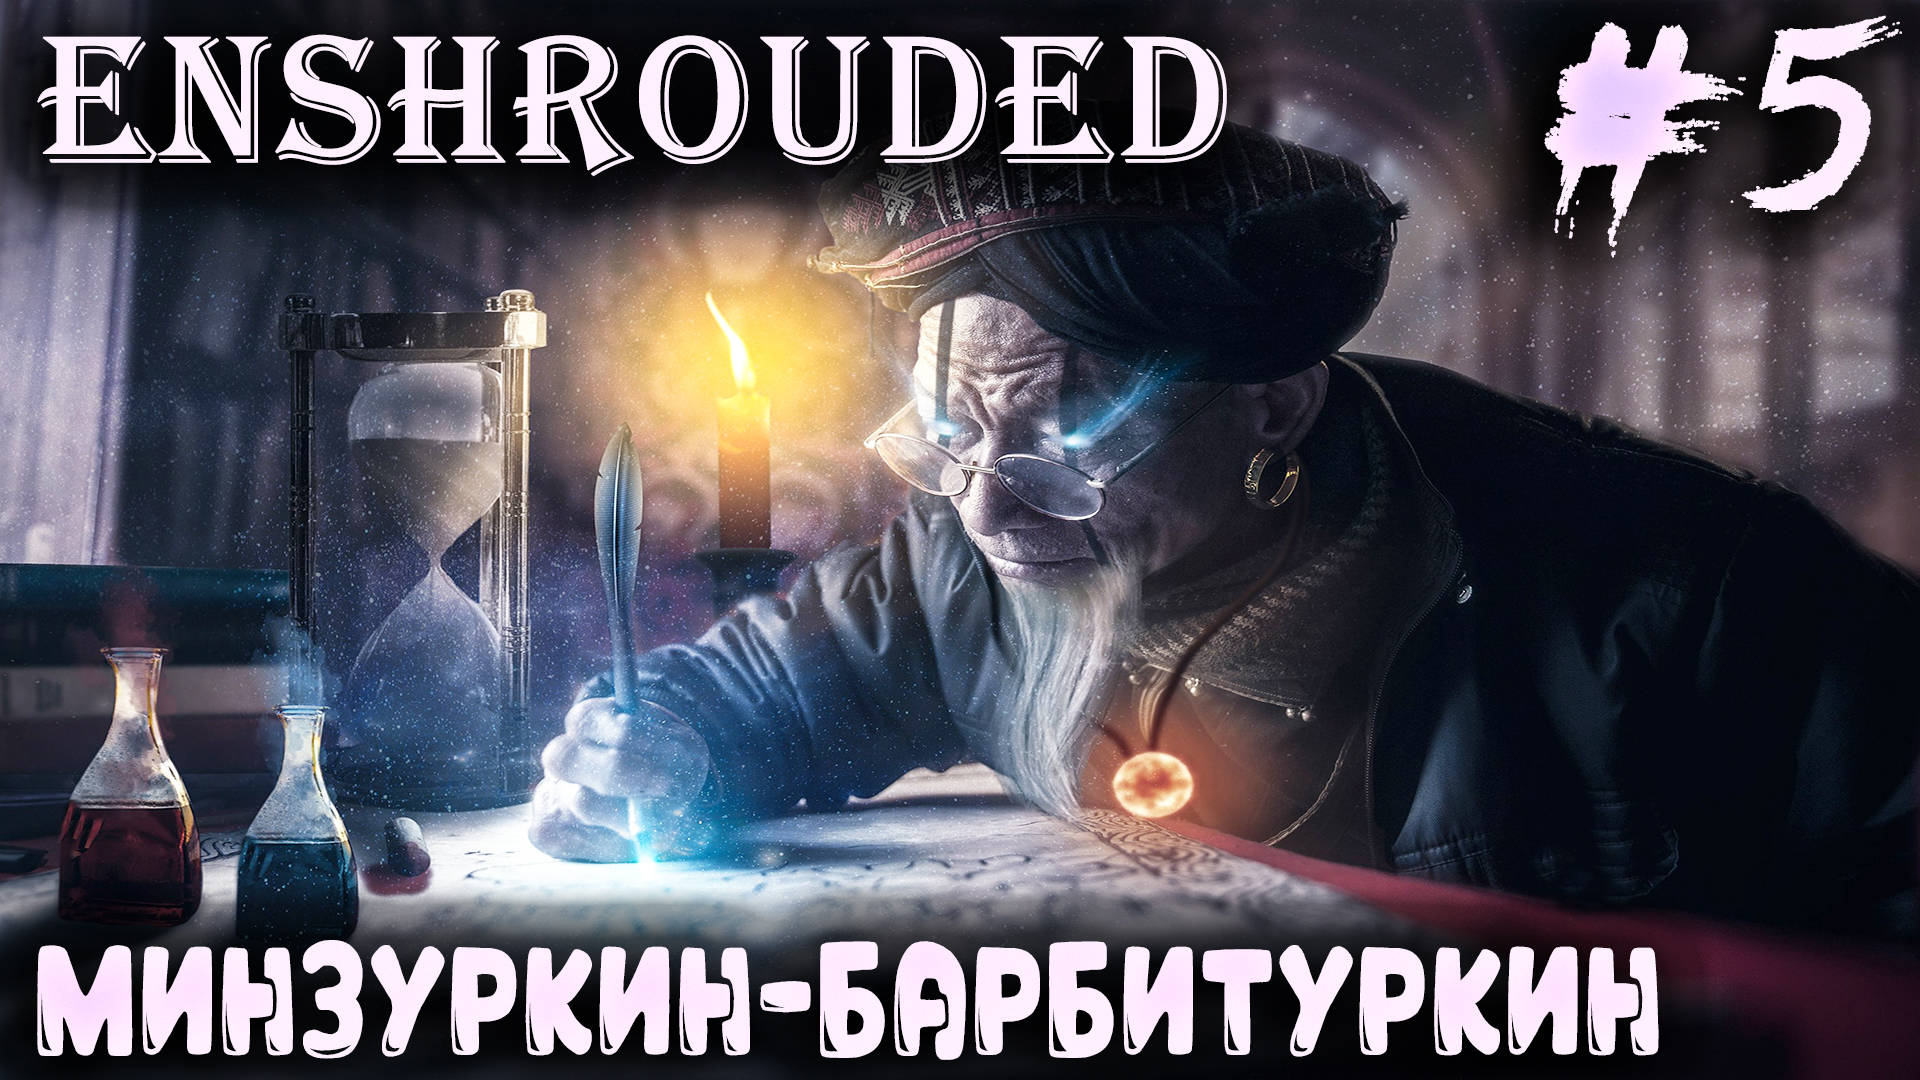 Enshrouded - прохождение. Дядя посещает крипту алхимика и находит легендарный клинок #5